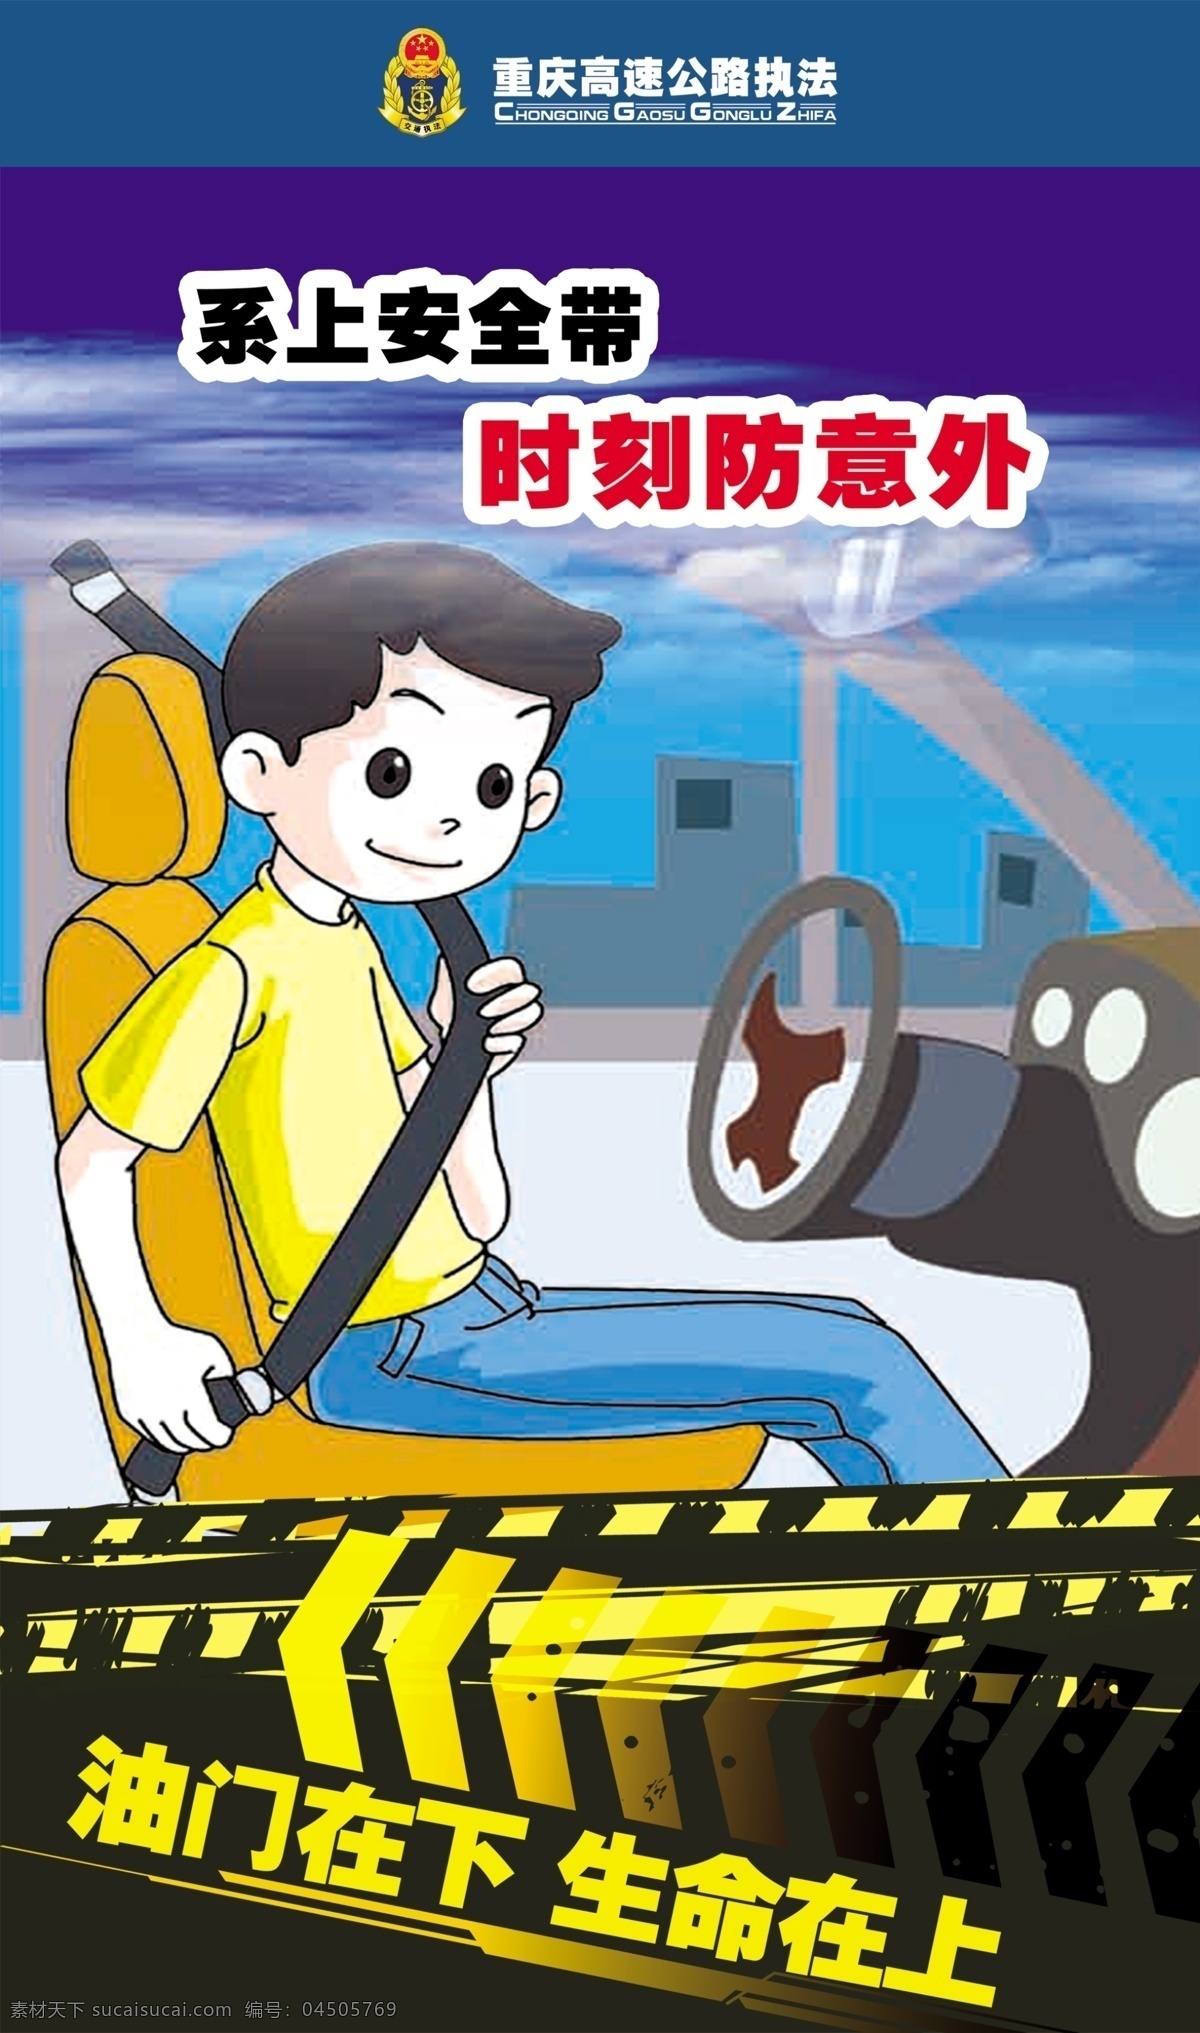 安全带 重庆 高速公路 执法 标志 系上安全带 时刻防意外 人物 车子 保护生命 平安出行 广告设计模板 源文件